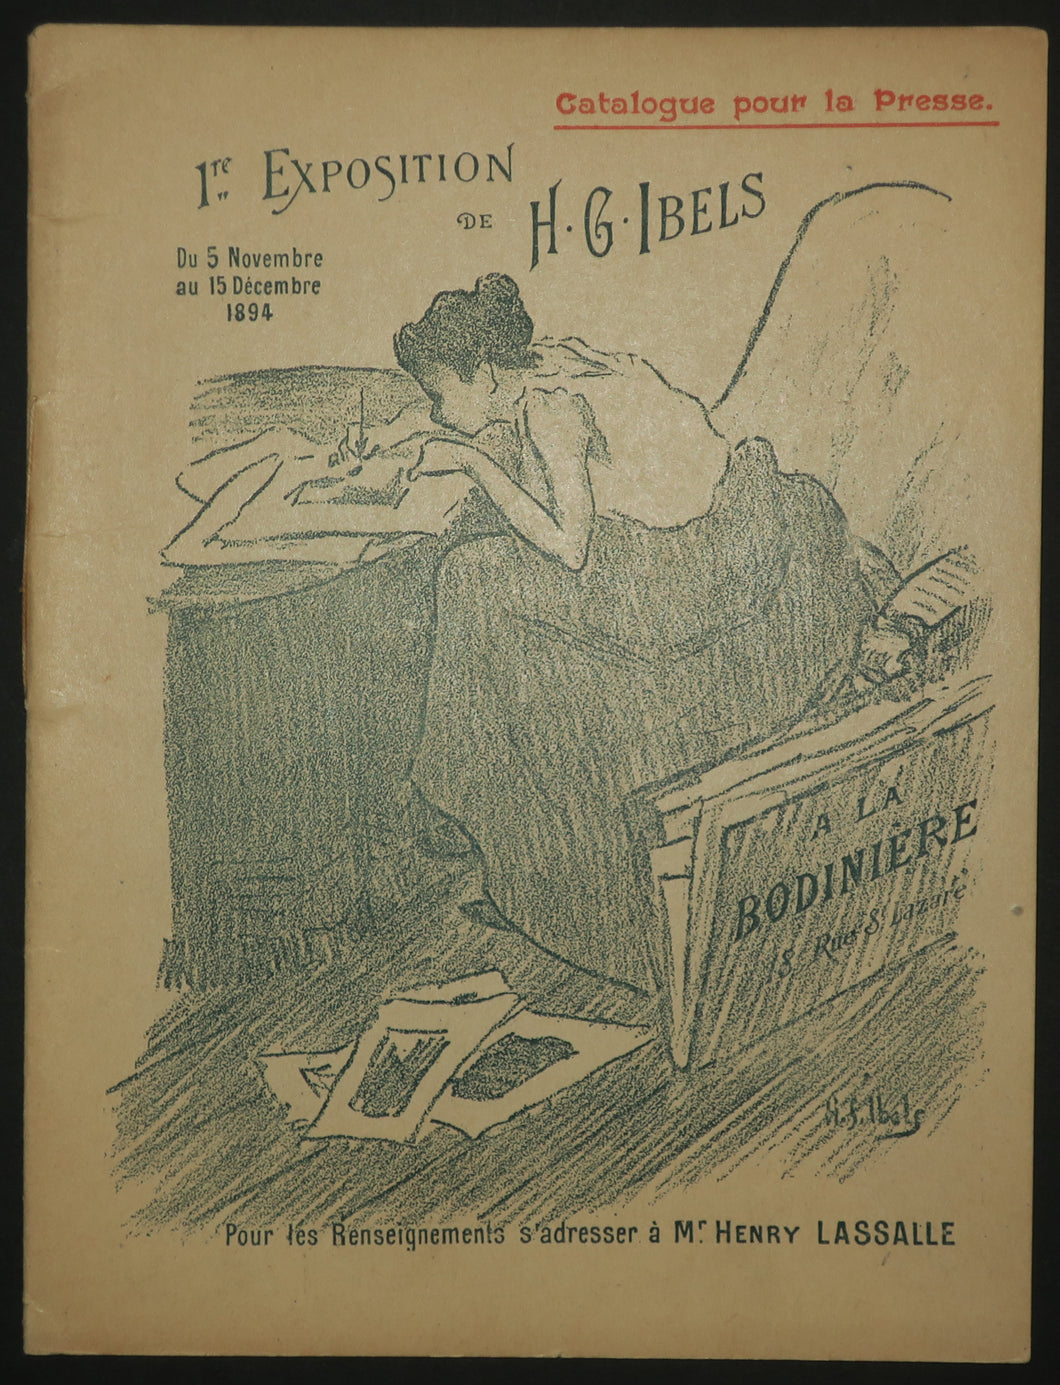 1ère Exposition de H.G. Ibels, du 5 novembre au 15 décembre 1894, à la Bodinière, 18 rue St Lazare. Catalogue pour la presse.